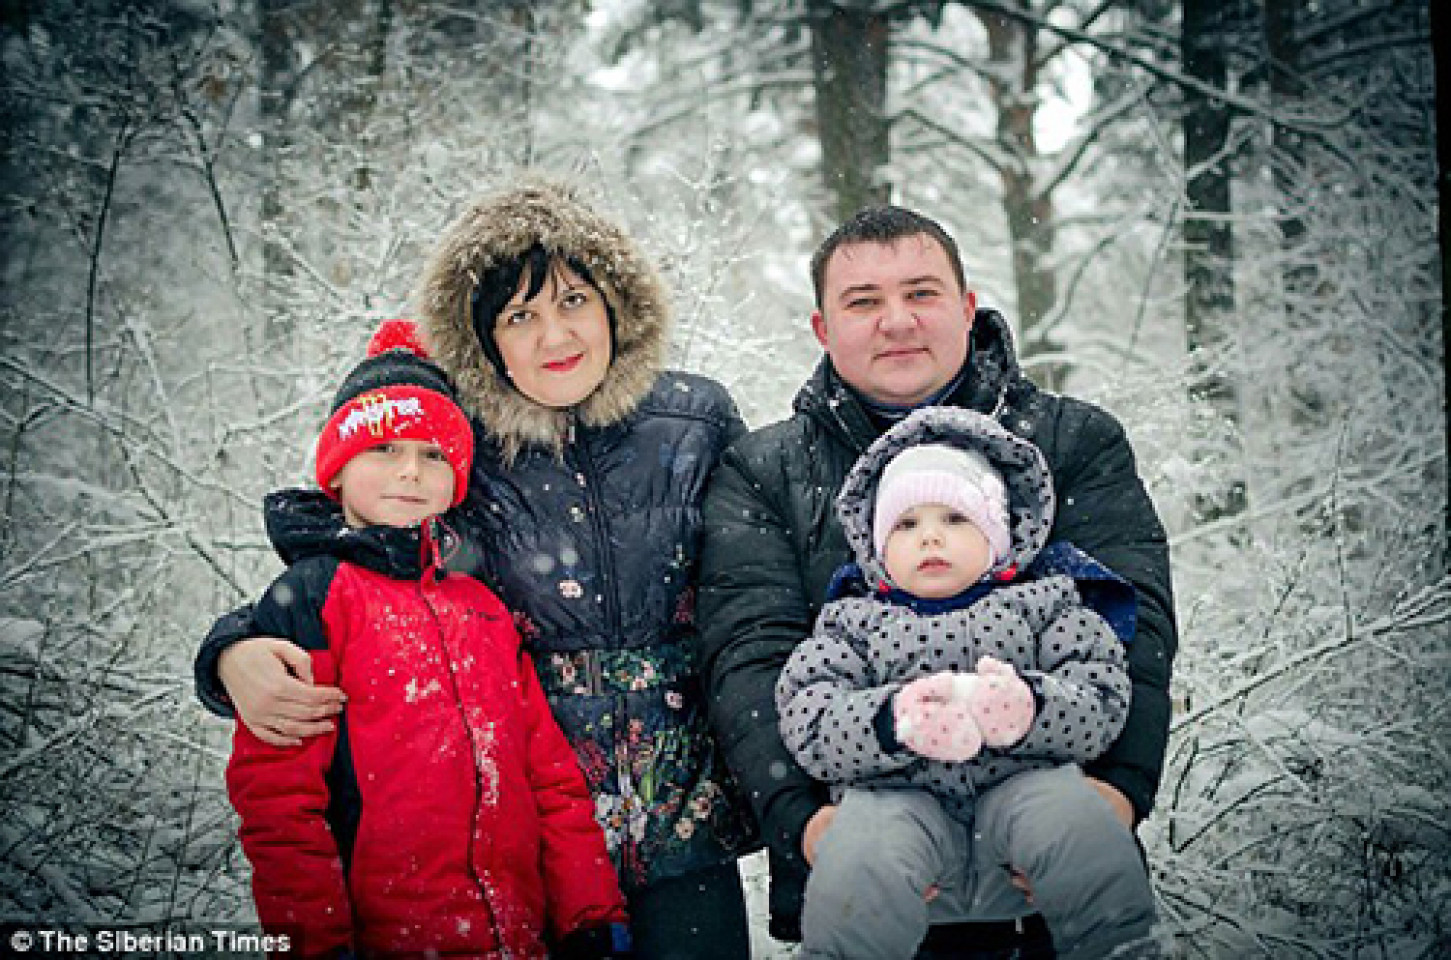 Đến giờ, em Moskalenko vẫn đang hôn mê mà chưa biết bố mẹ mình là Evgeny và Olesya đã thiệt mạng trong vụ hỏa hoạn ở trung tâm thương mại Zimnjaja vishnja. Em gái Ksenia (4 tuổi) đang mất tích và được cho là cũng thiệt mạng.